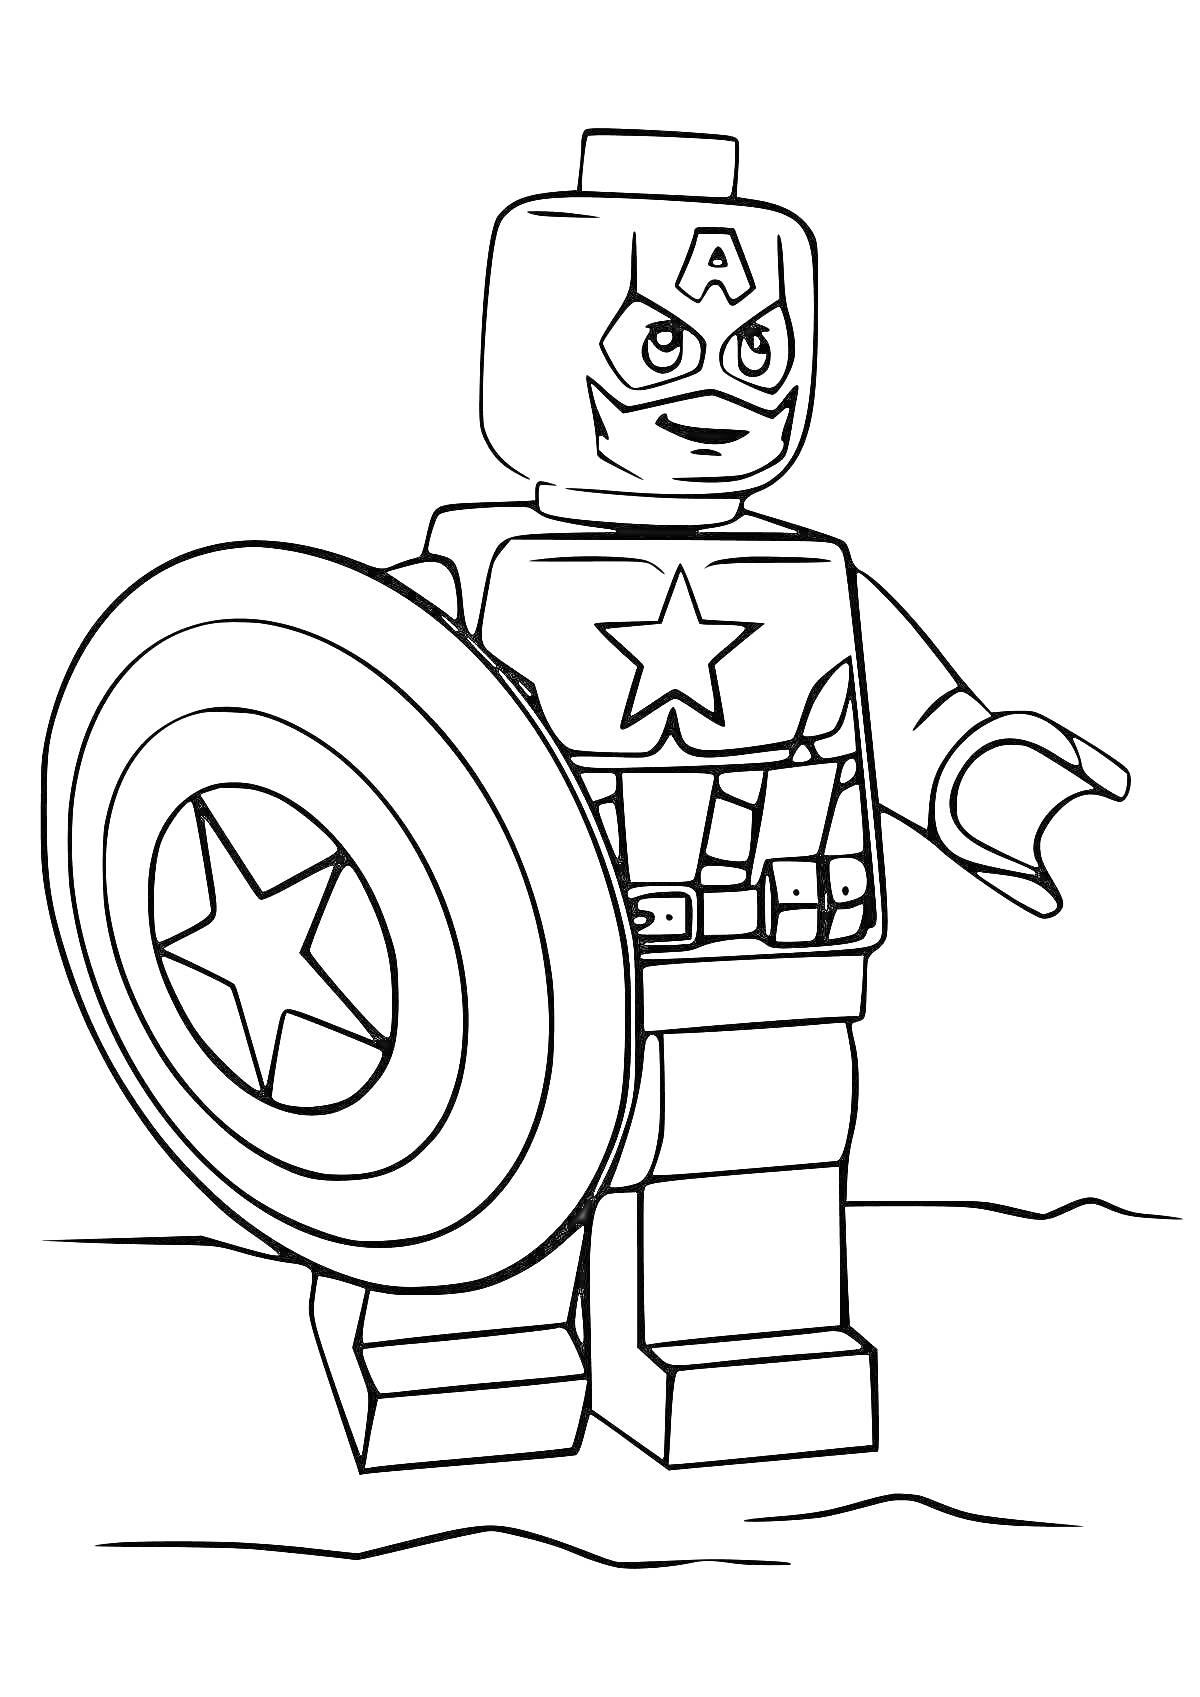 Раскраска Капитан Америка в стиле LEGO с щитом и звездами на костюме